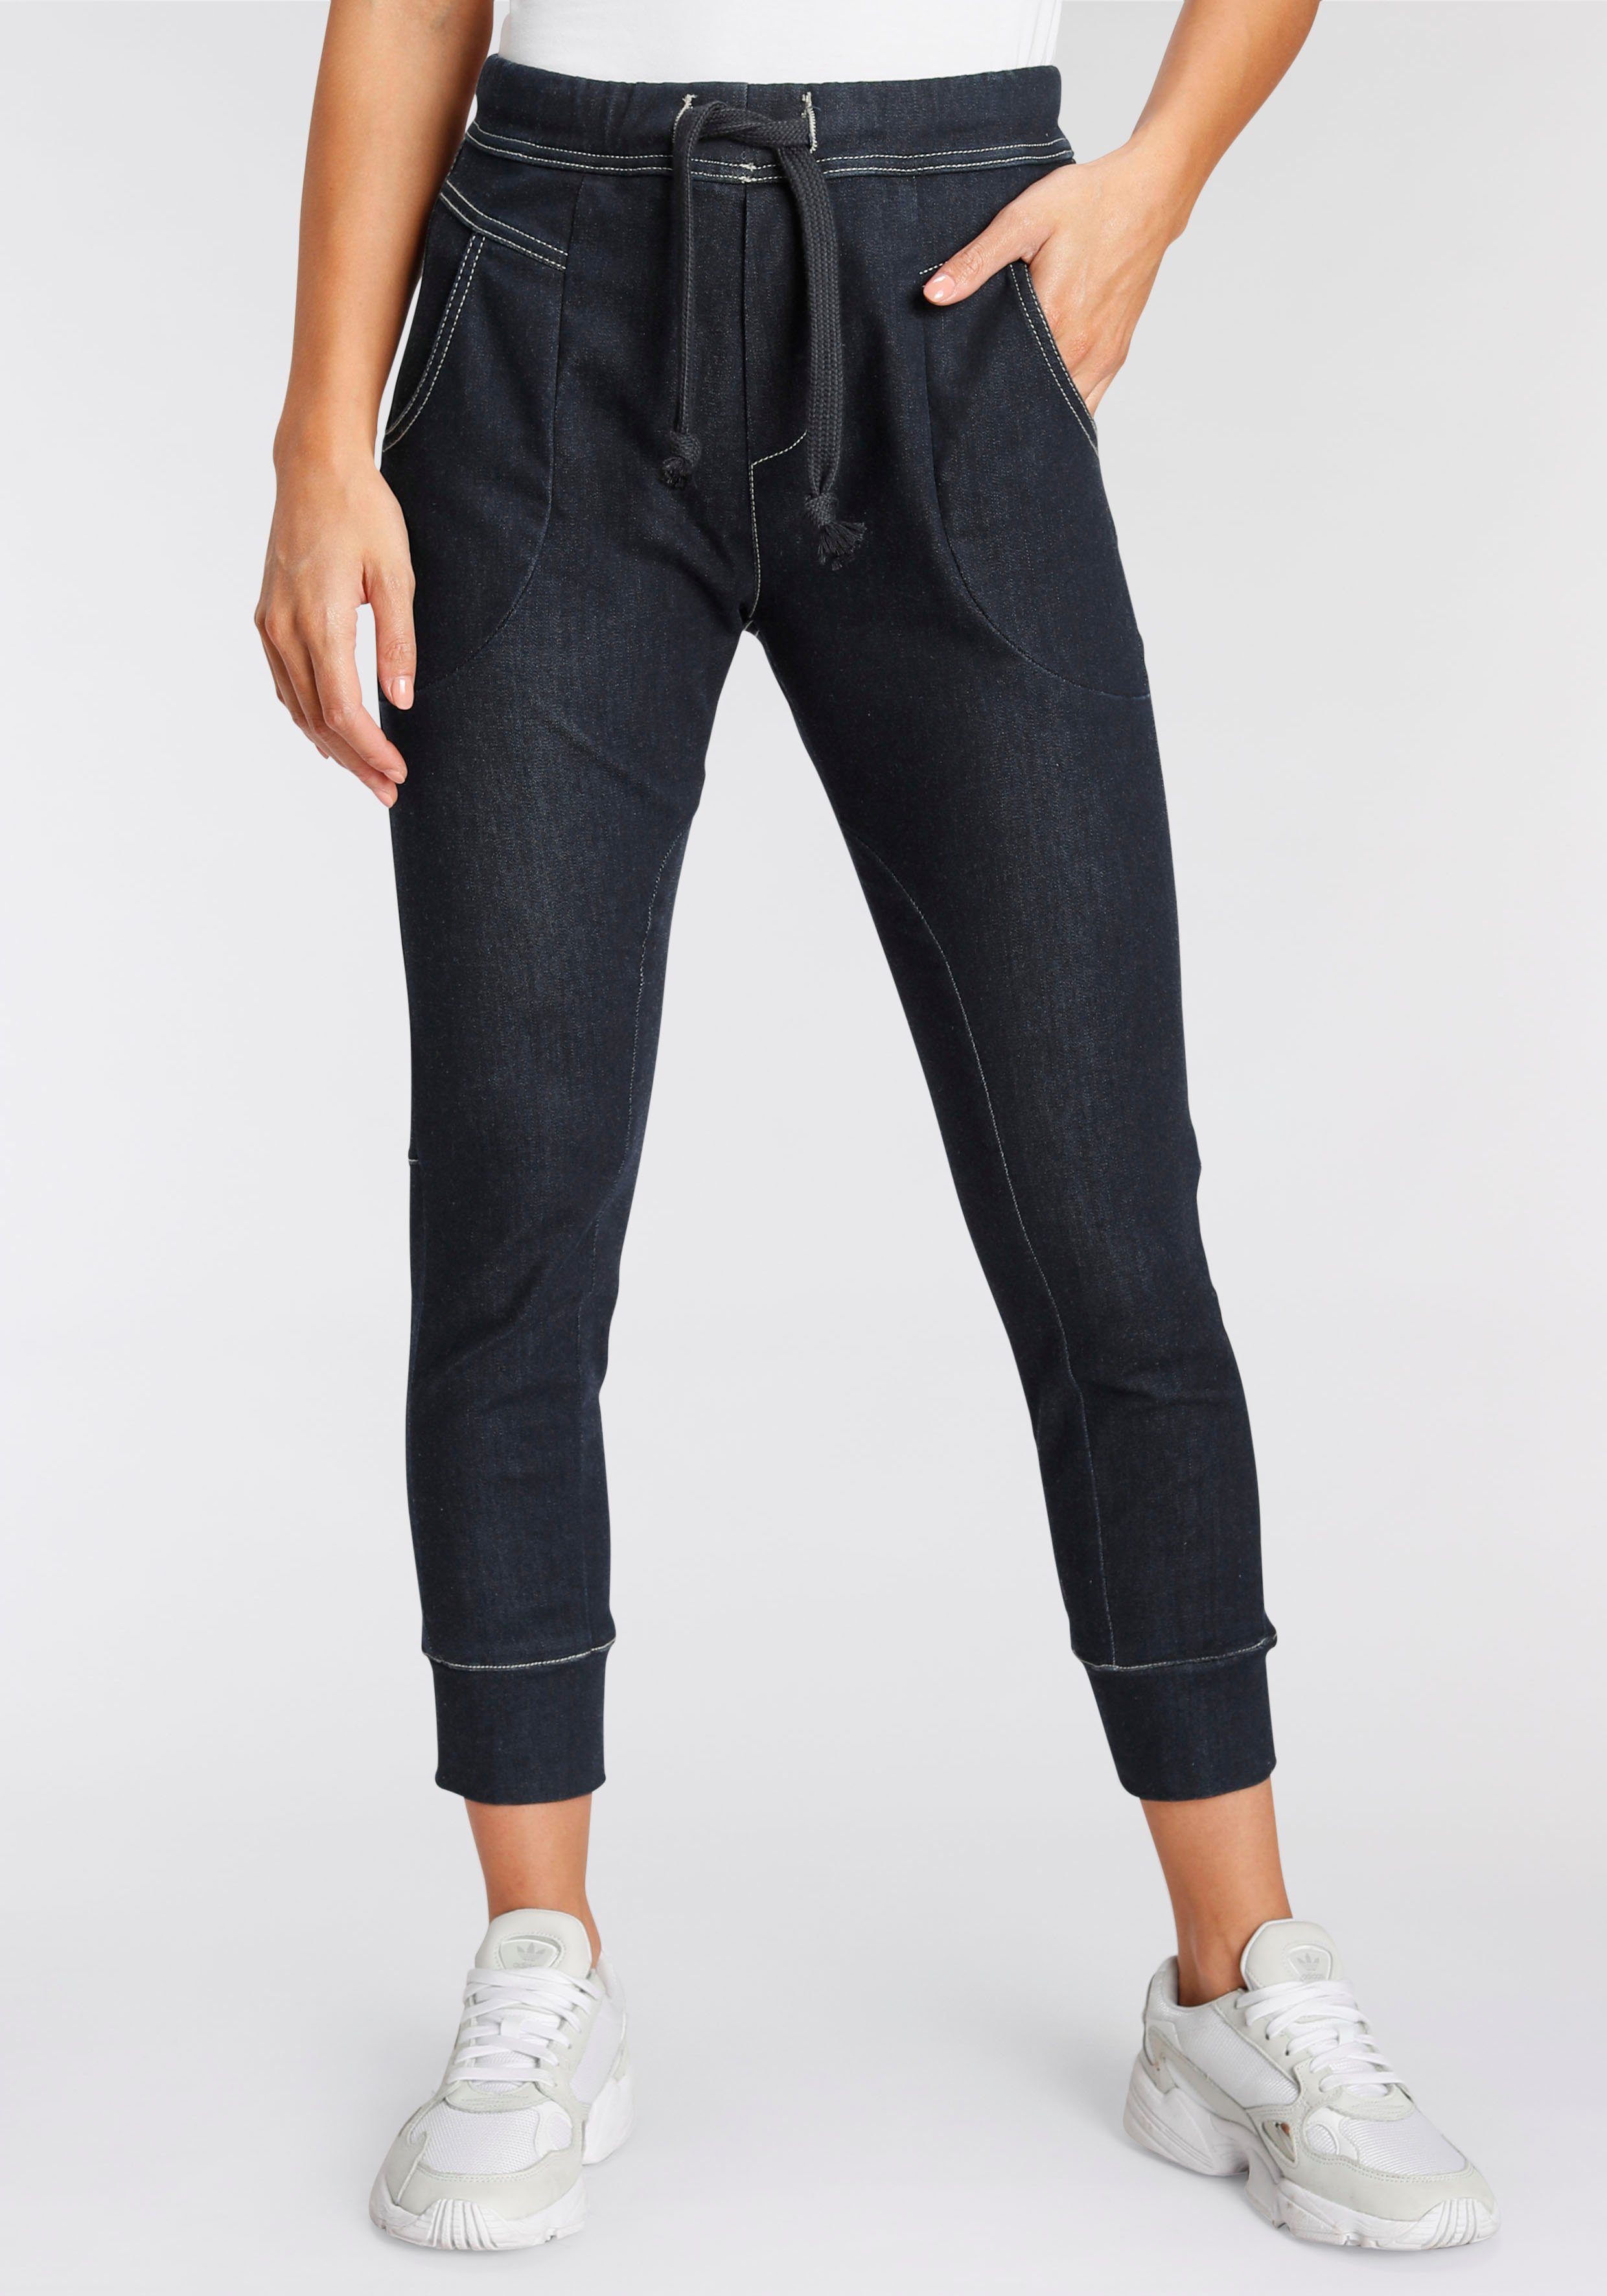 Jeans Jogger Pants für Damen online kaufen | OTTO